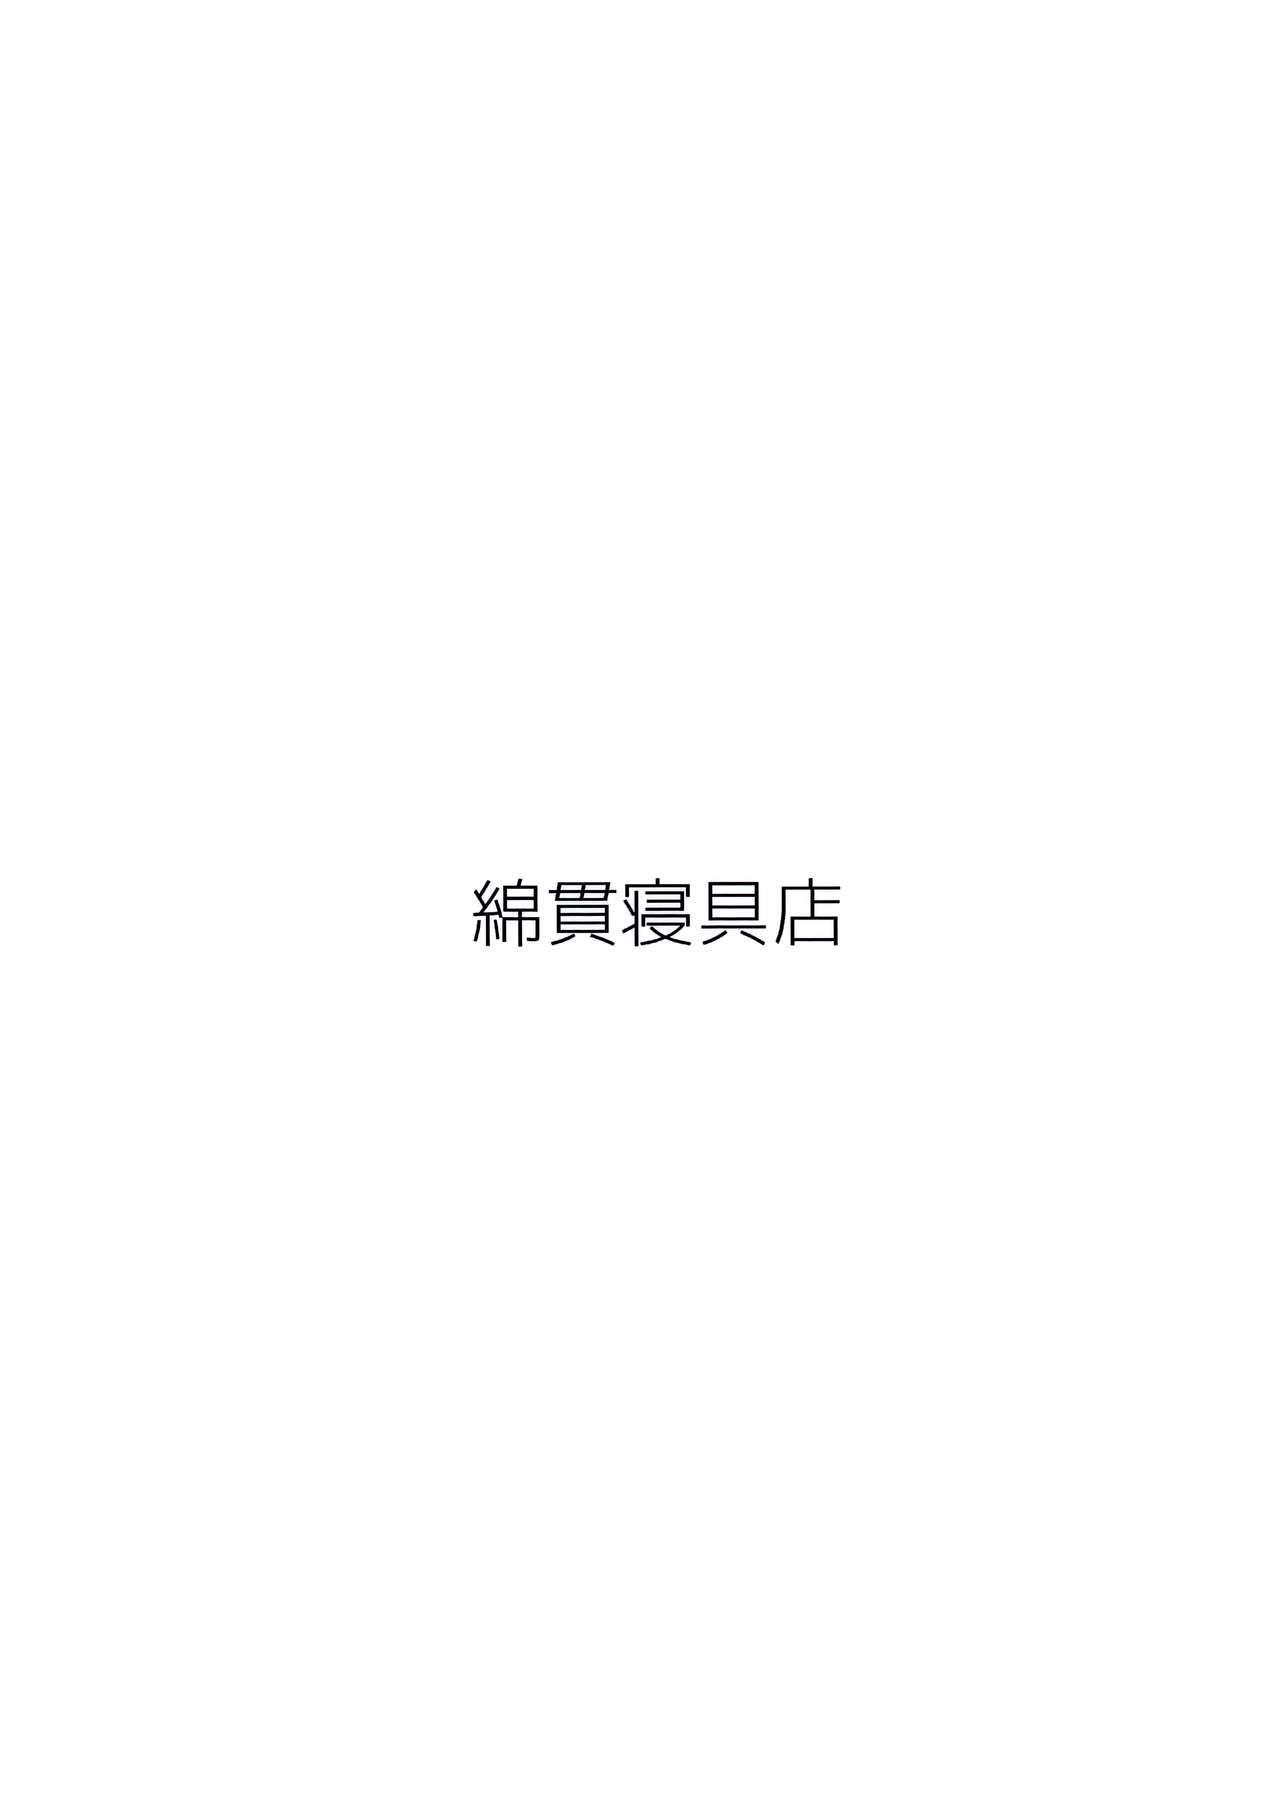 (コミティア114) [綿貫寝具店 (綿貫ろん)] in the first person